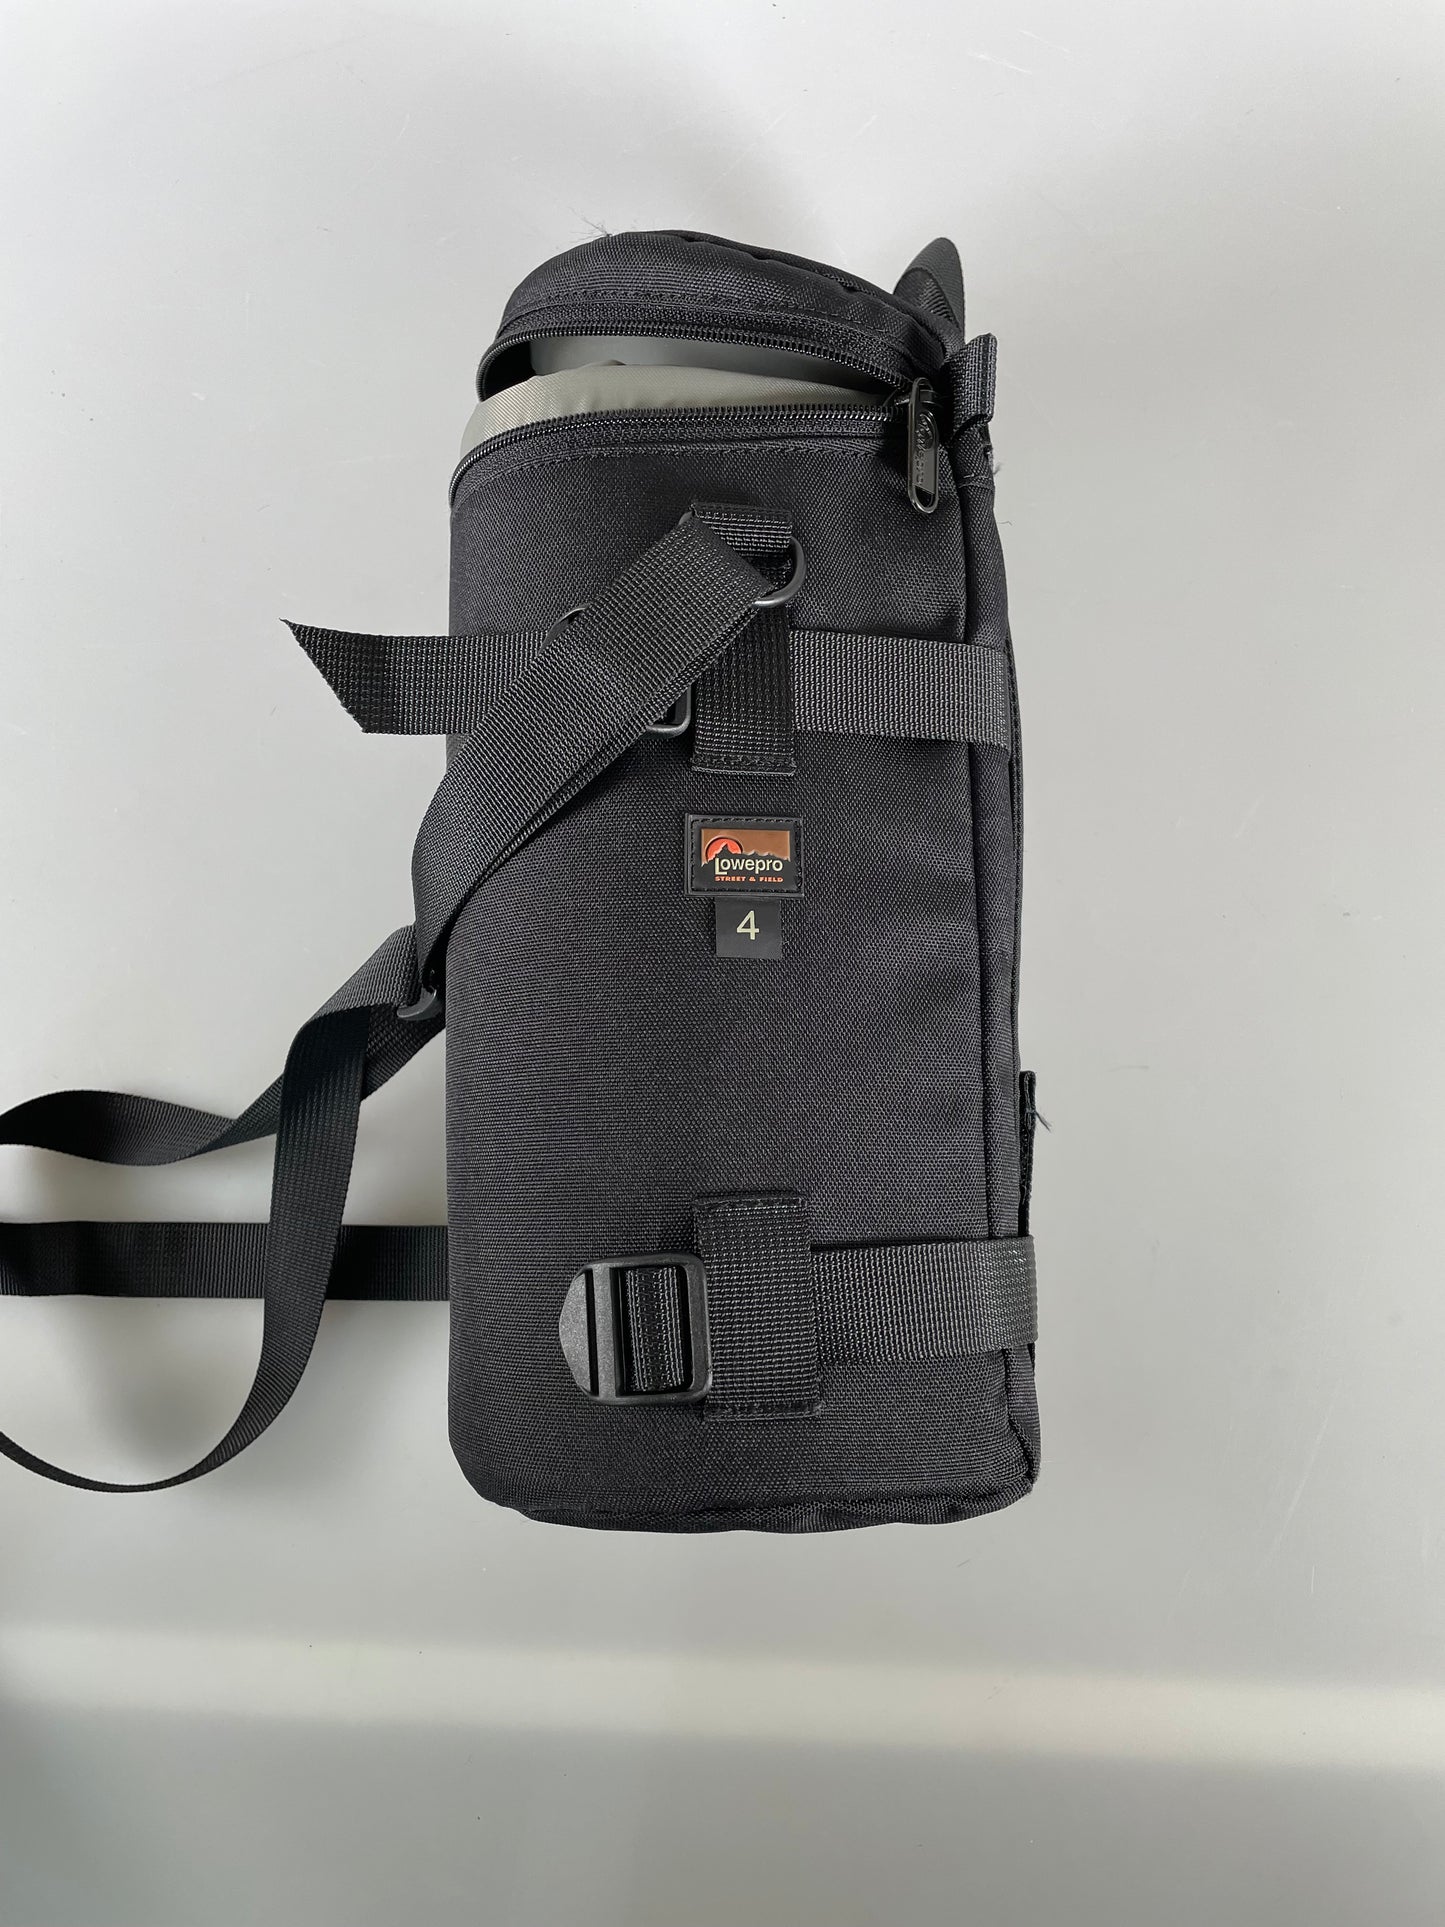 Lowepro 4 Lens Case- Camera Lens bag - black